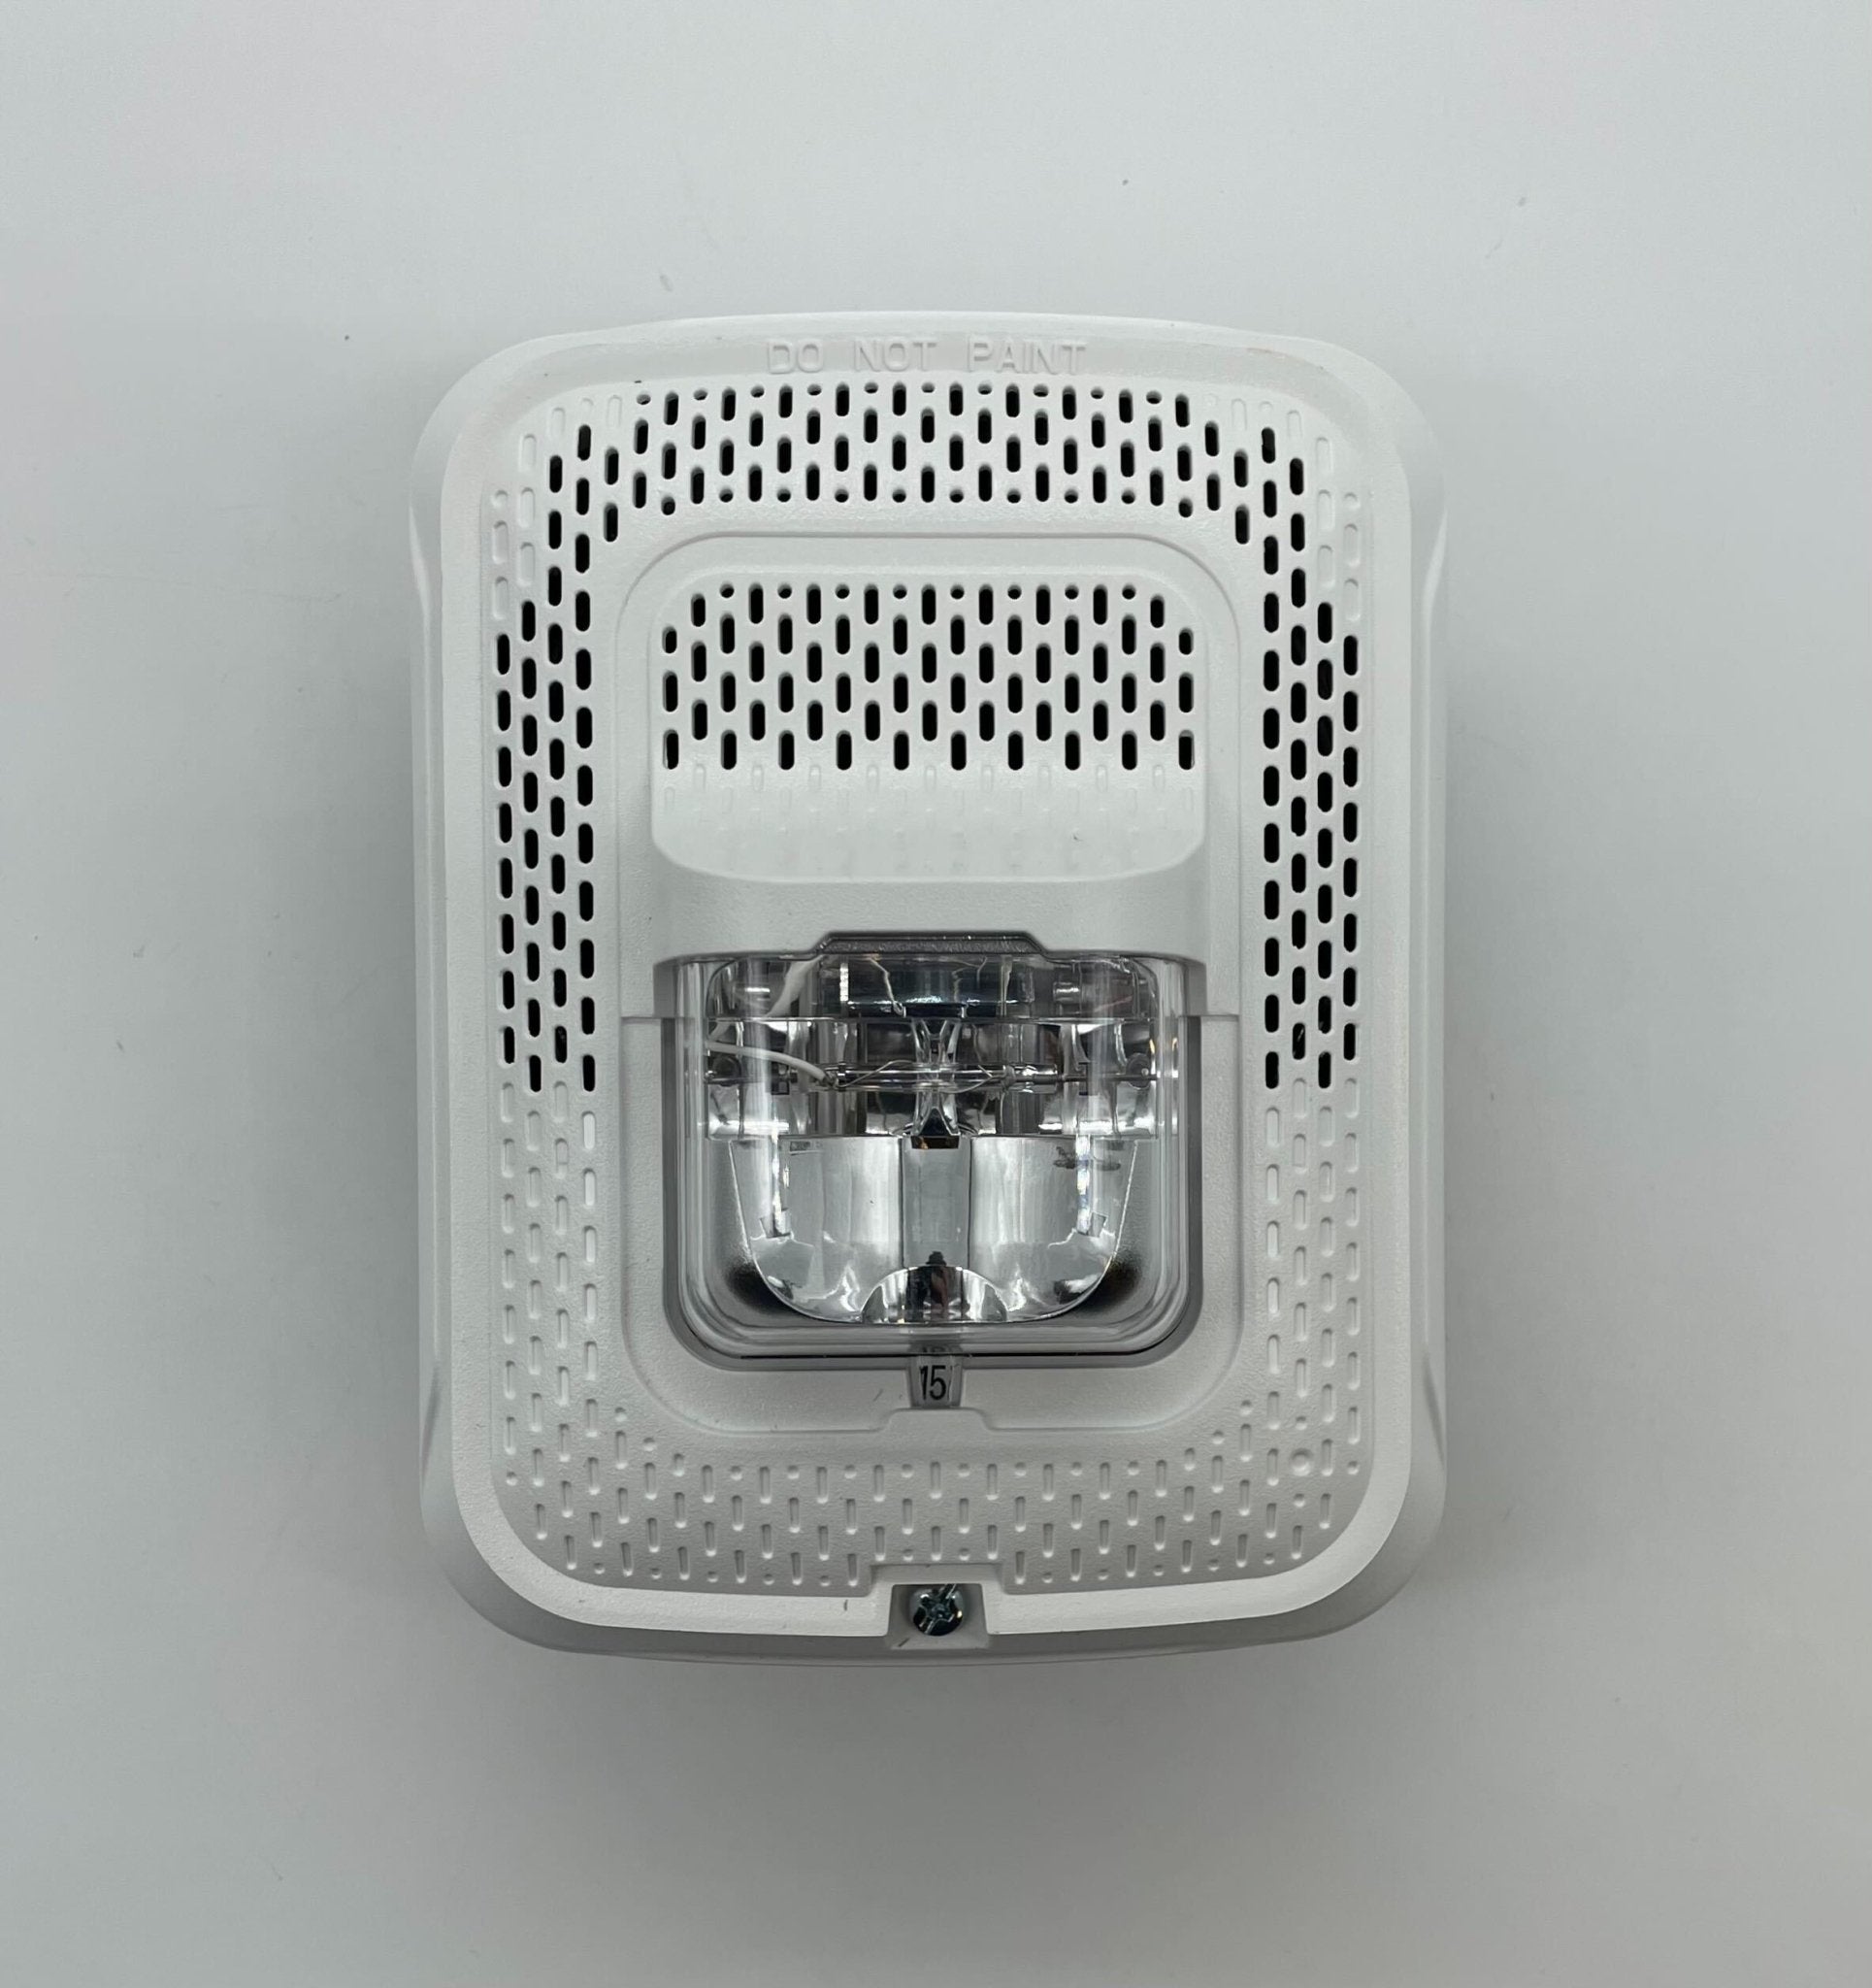 System Sensor SPSWL-P Speaker Strobe White Wall Plain - The Fire Alarm Supplier